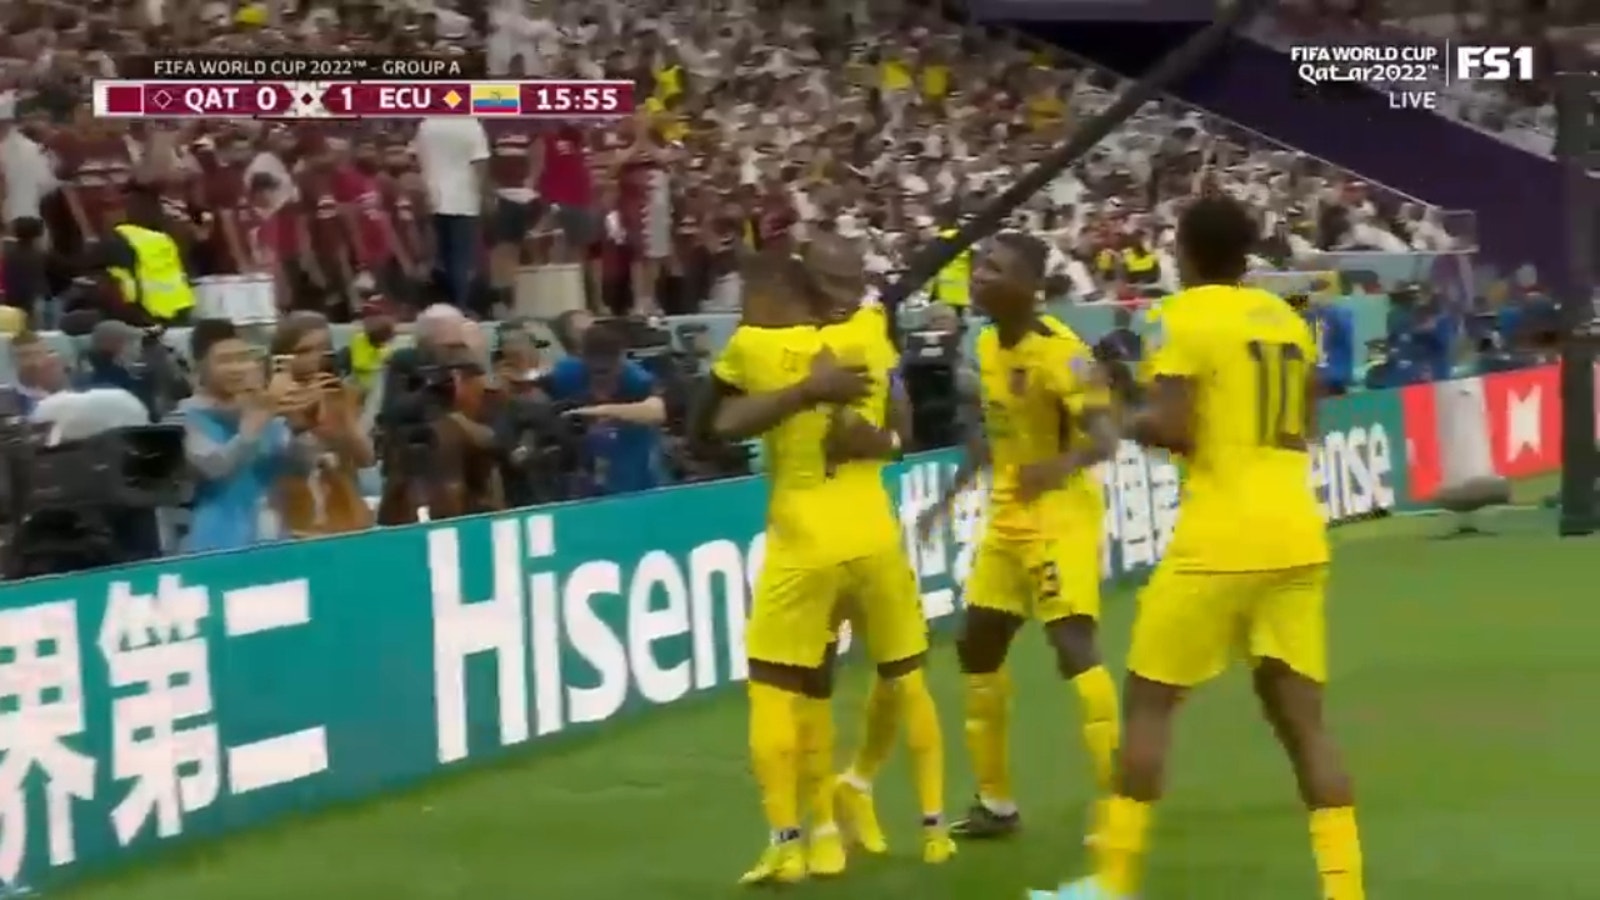 Ecuador's Enner Valencia draws a foul in the box and scores a PK goal vs Qatar 